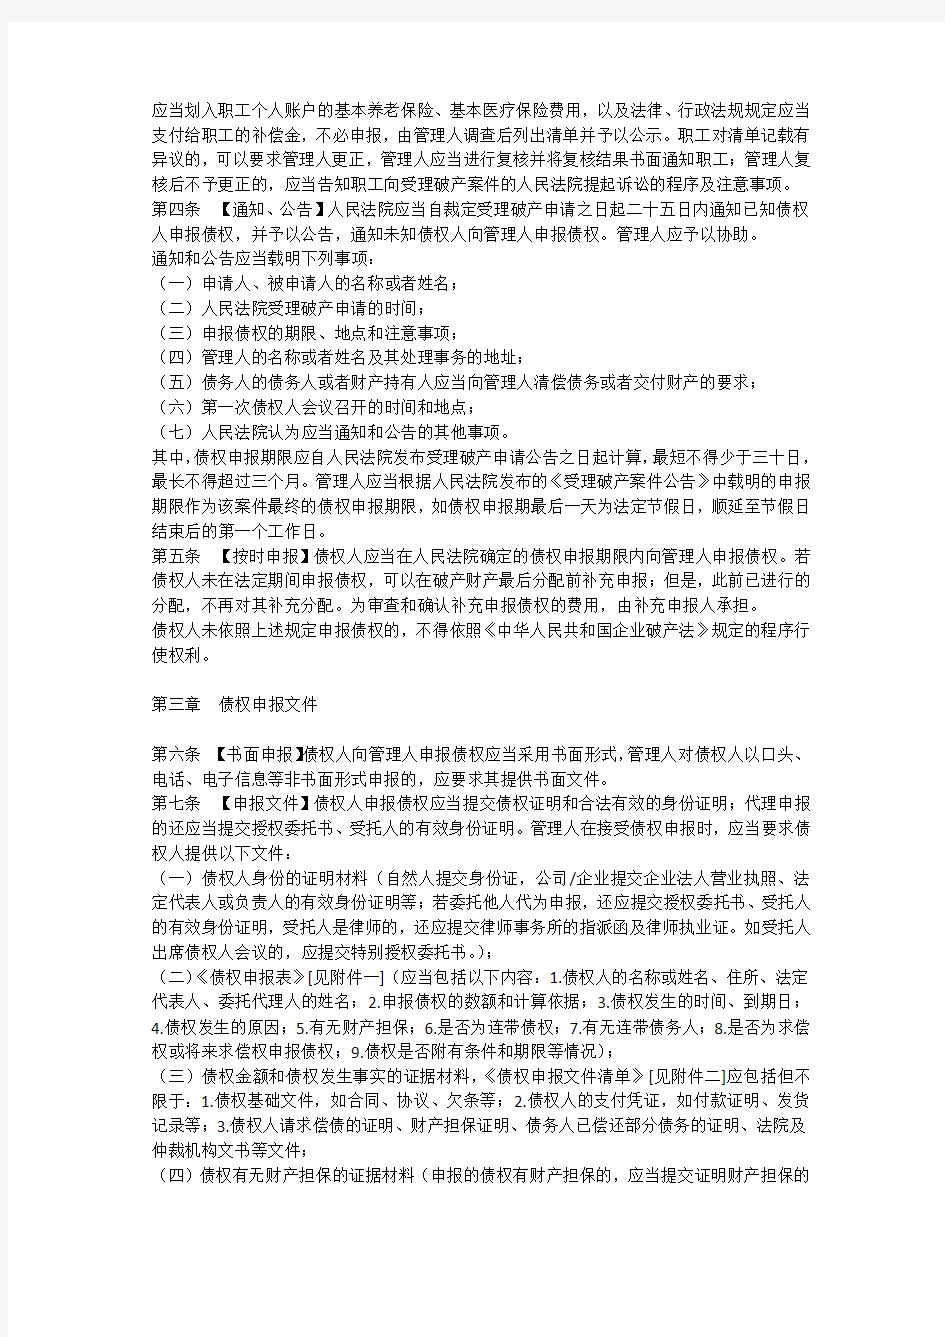 深圳破产案件管理人债权申报及审查业务指引